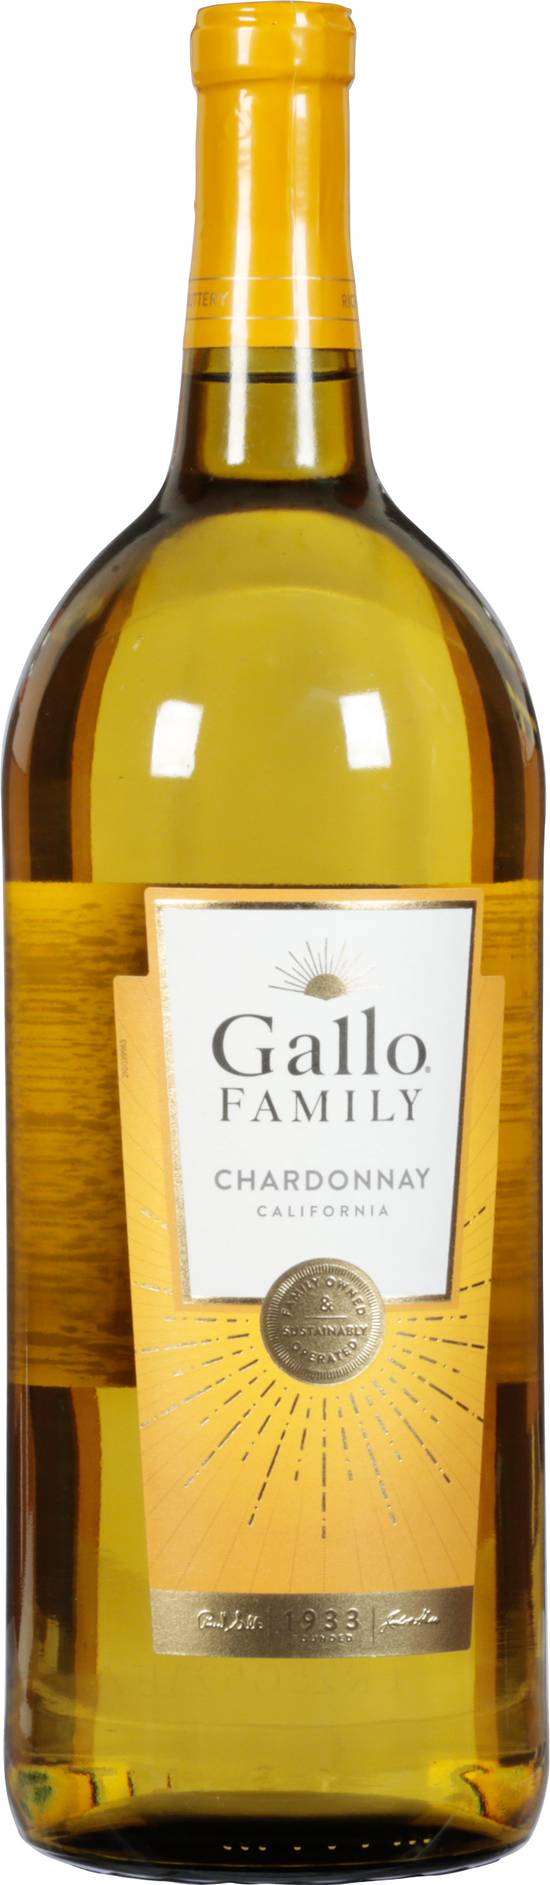 Gallo Family California Chardonnay White Wine (1.5 L)